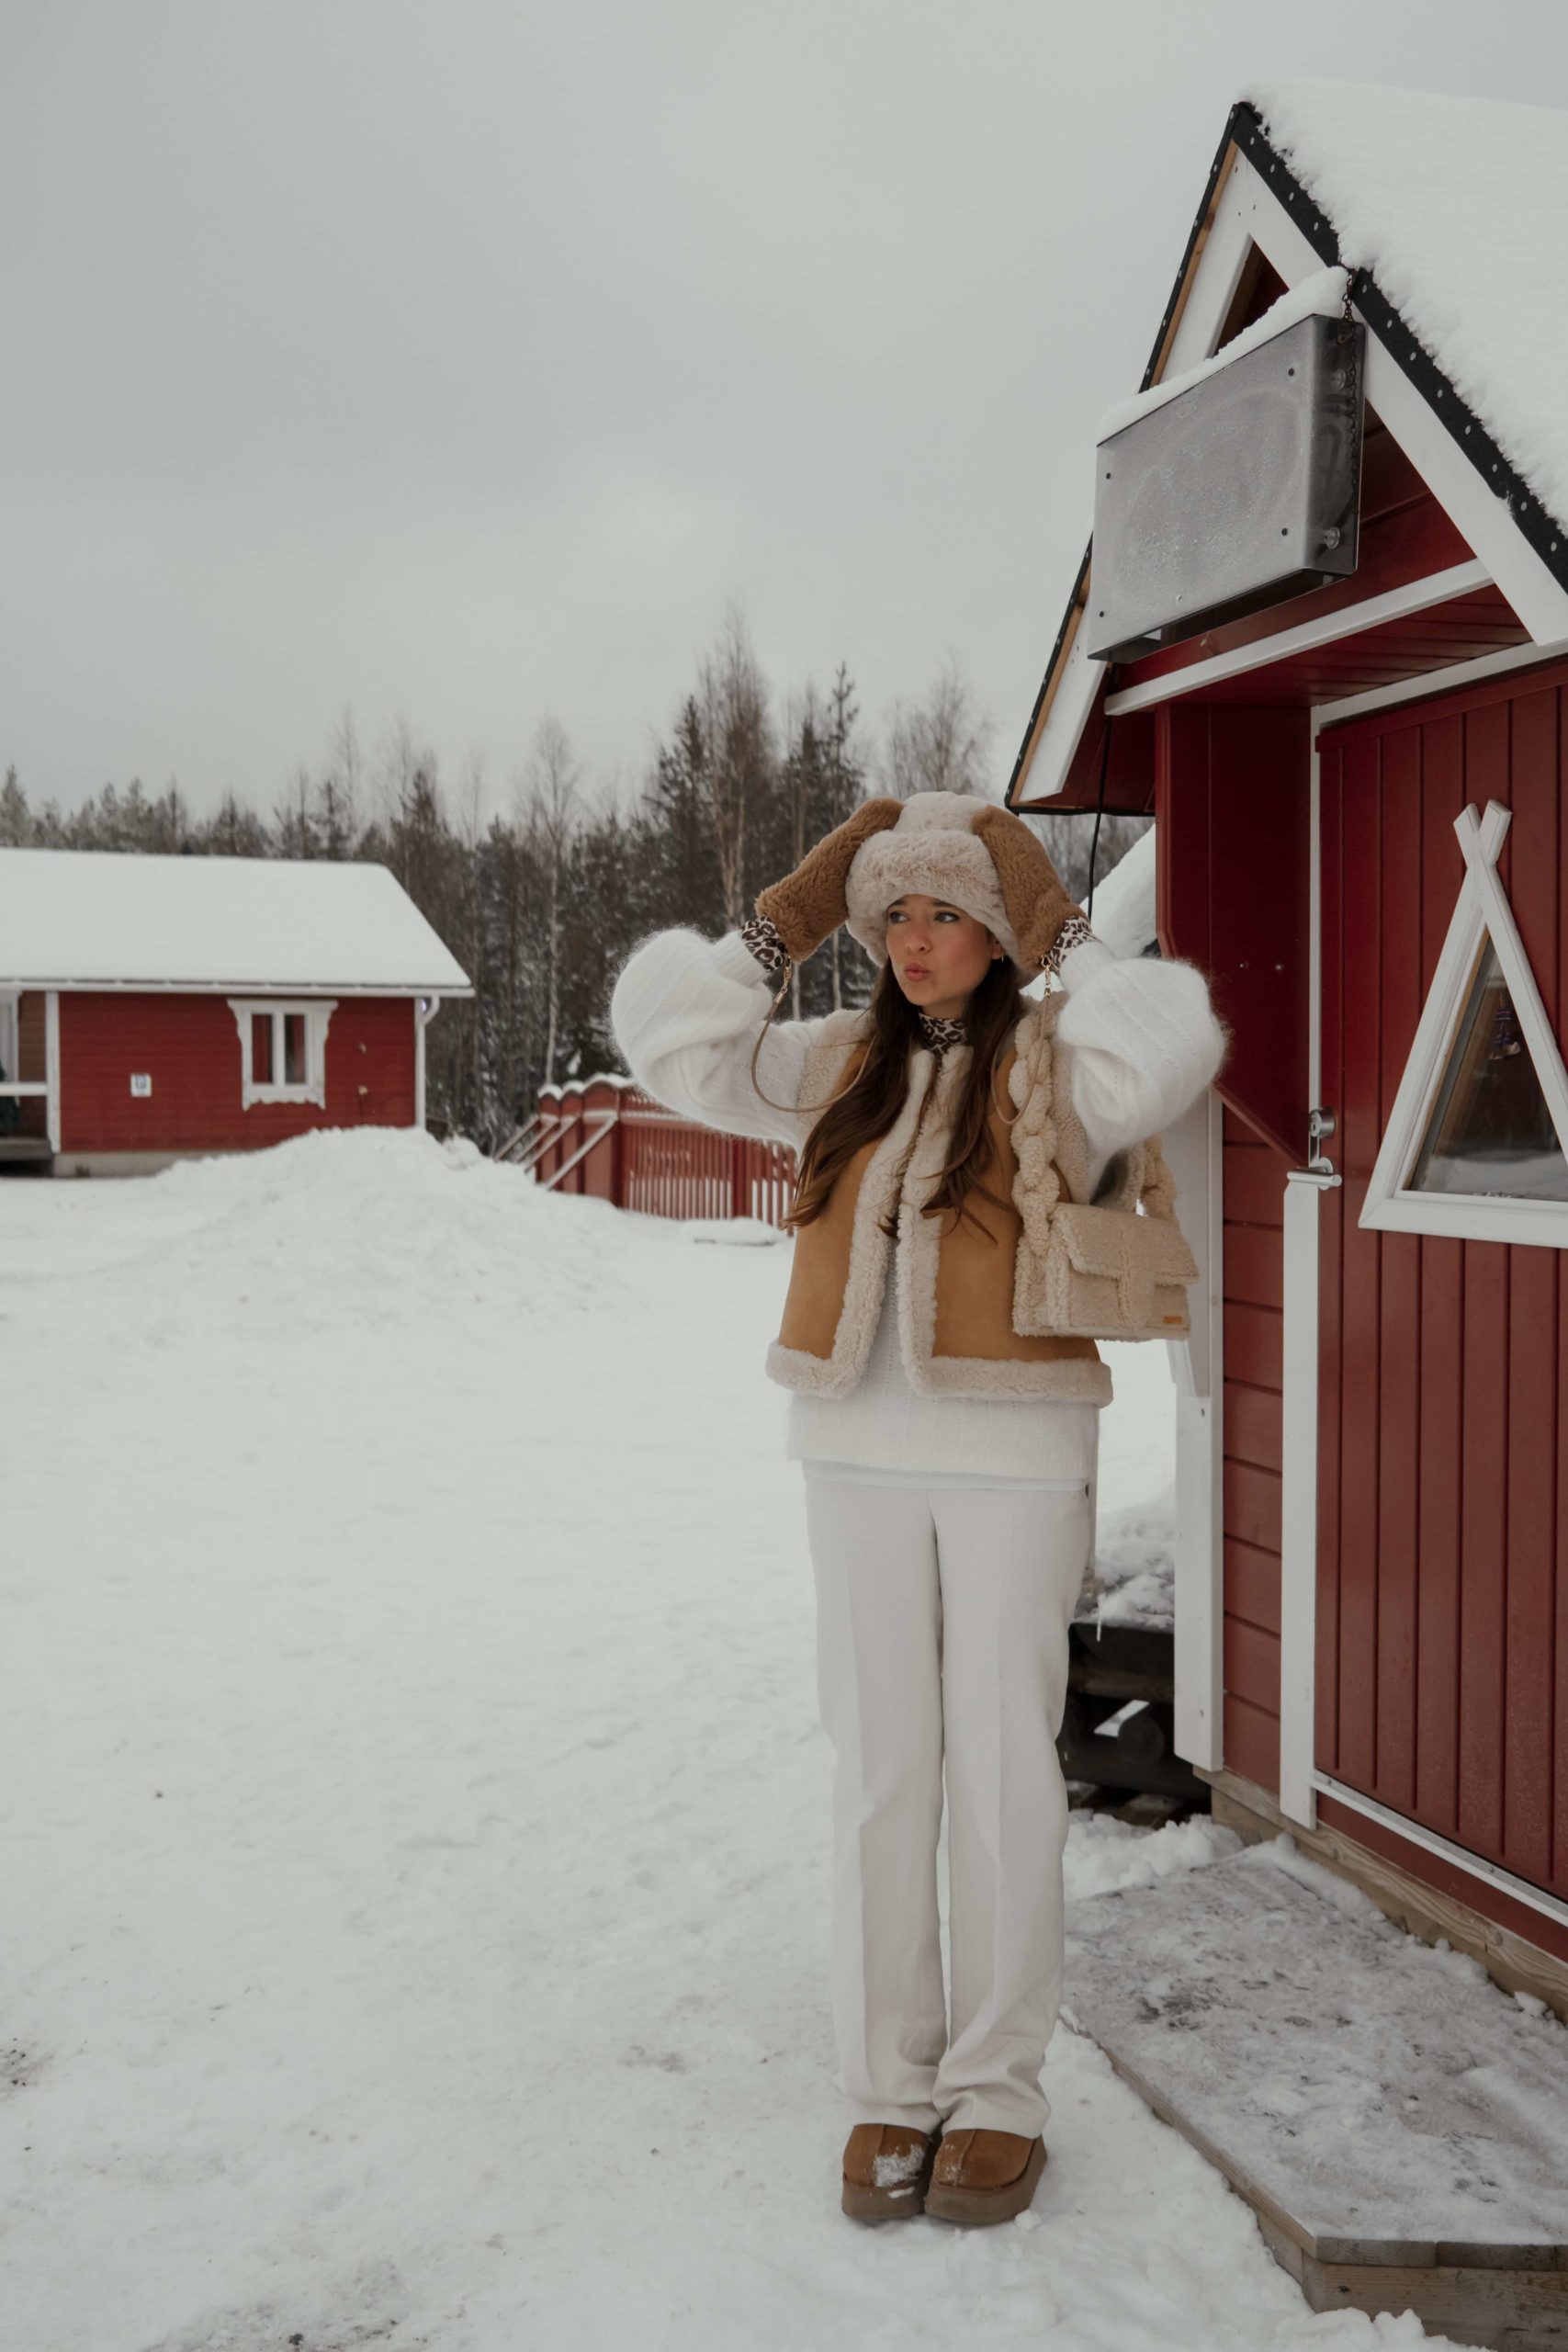 Tenue d'hiver en Laponie, inspirations scandinaves